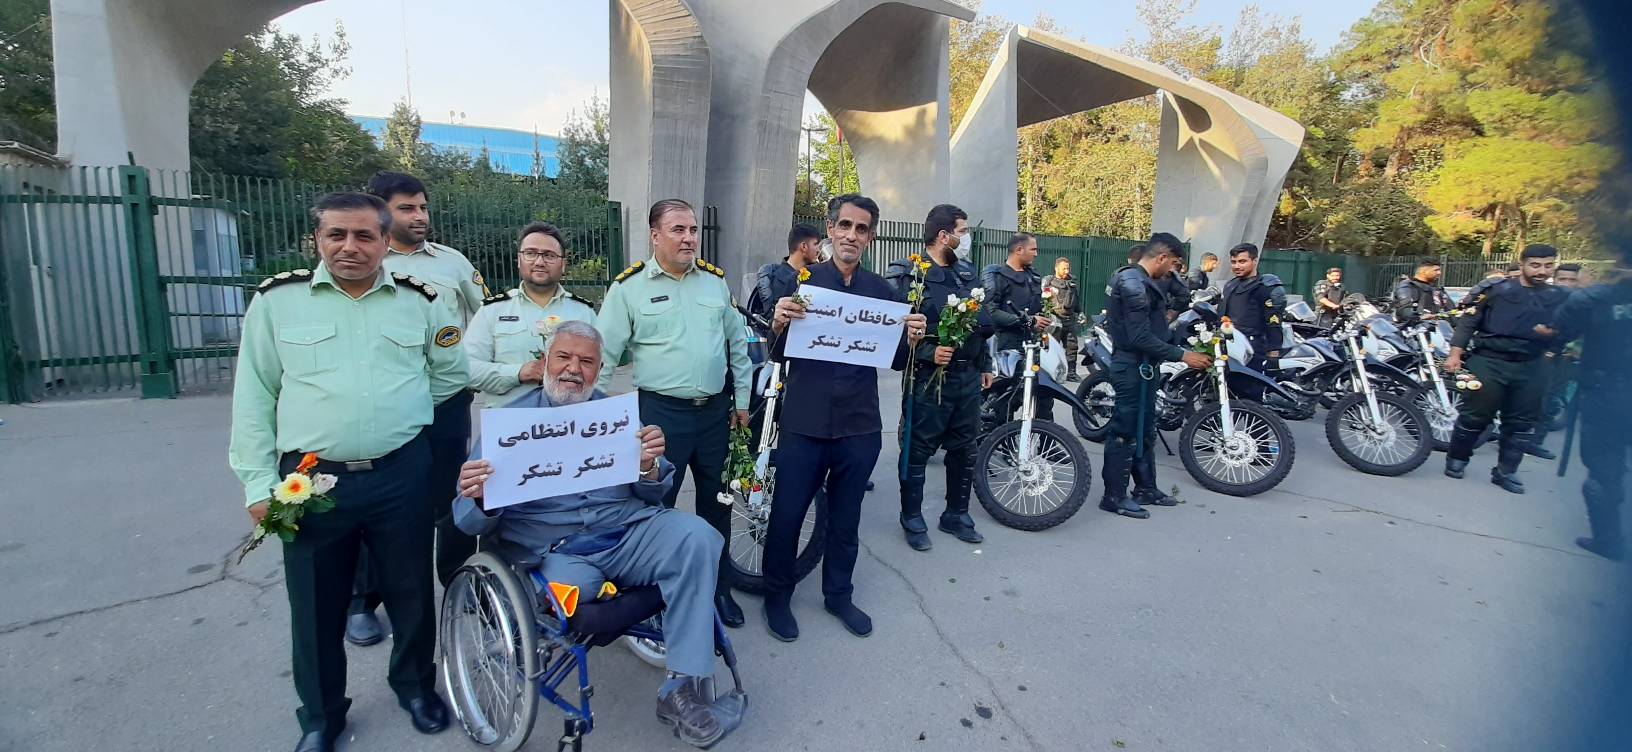 تشکر و قدردانی خانواده های شهدا و مردم تهران از حافظان امنیت/تصاویر